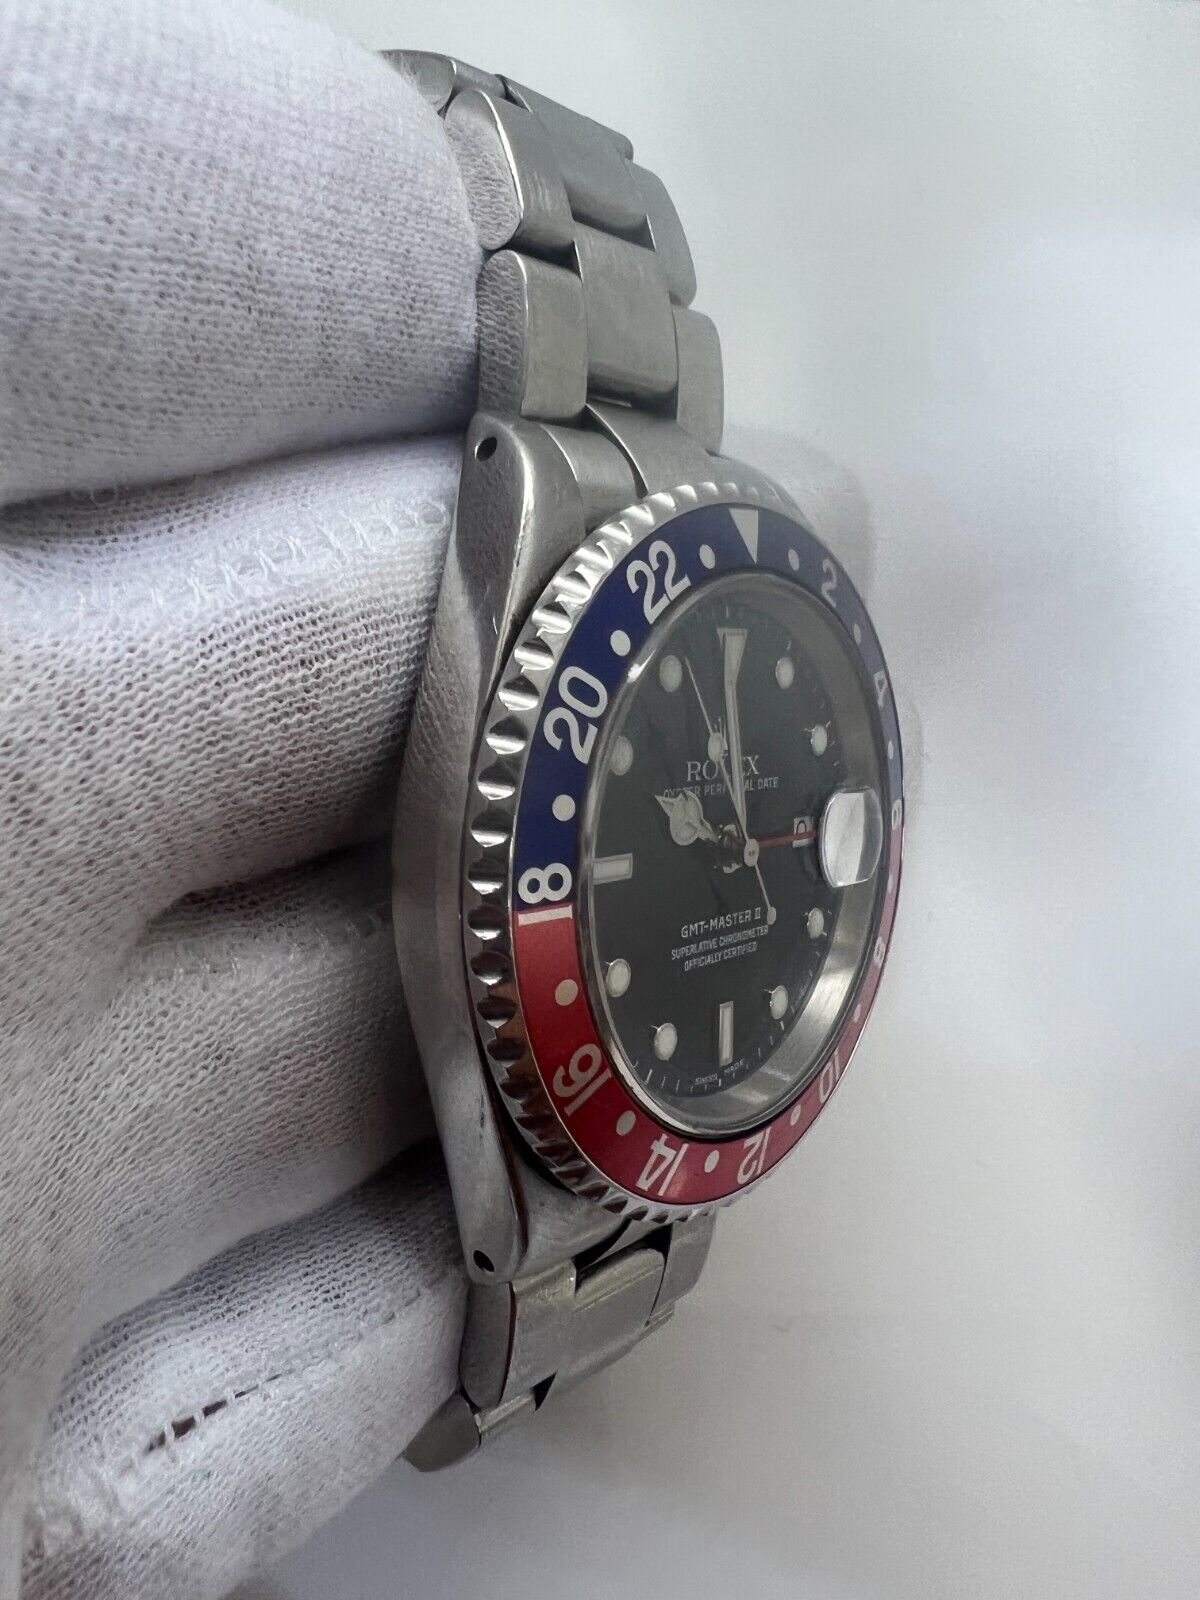 Rolex GMT Master II 16700 Pepsi Men's Watch 2002